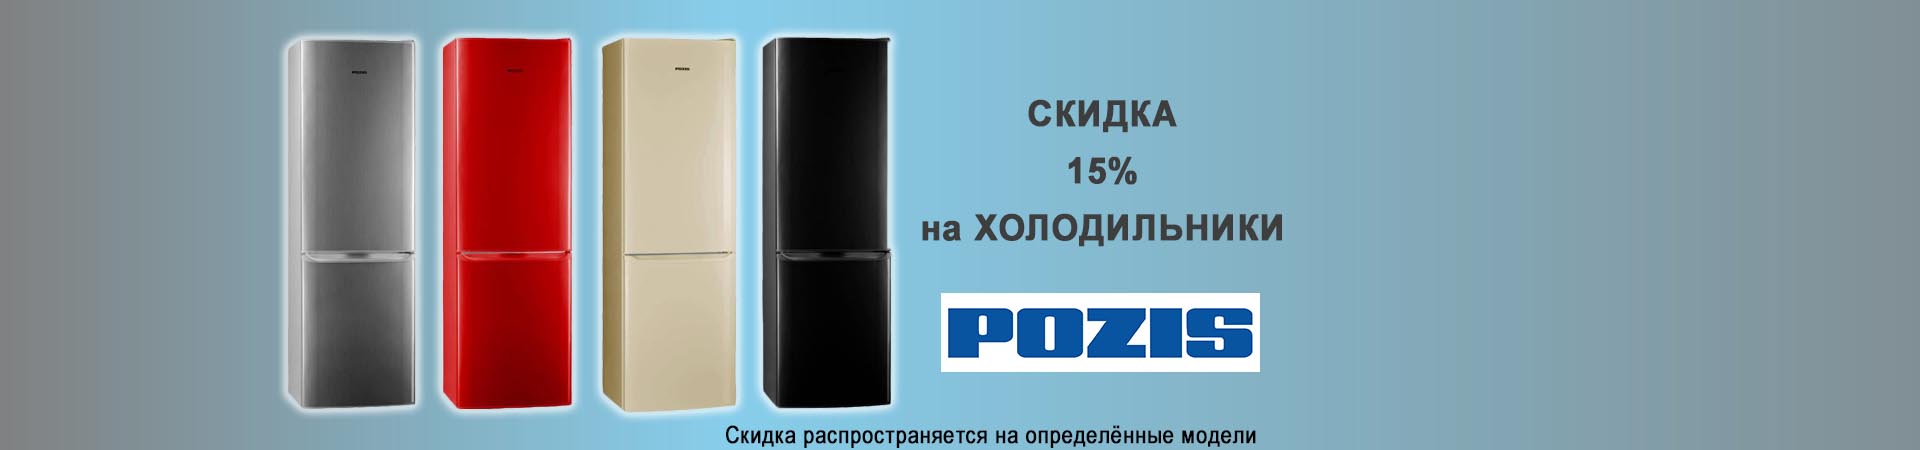 Скидка 15% на холодильники Pozis